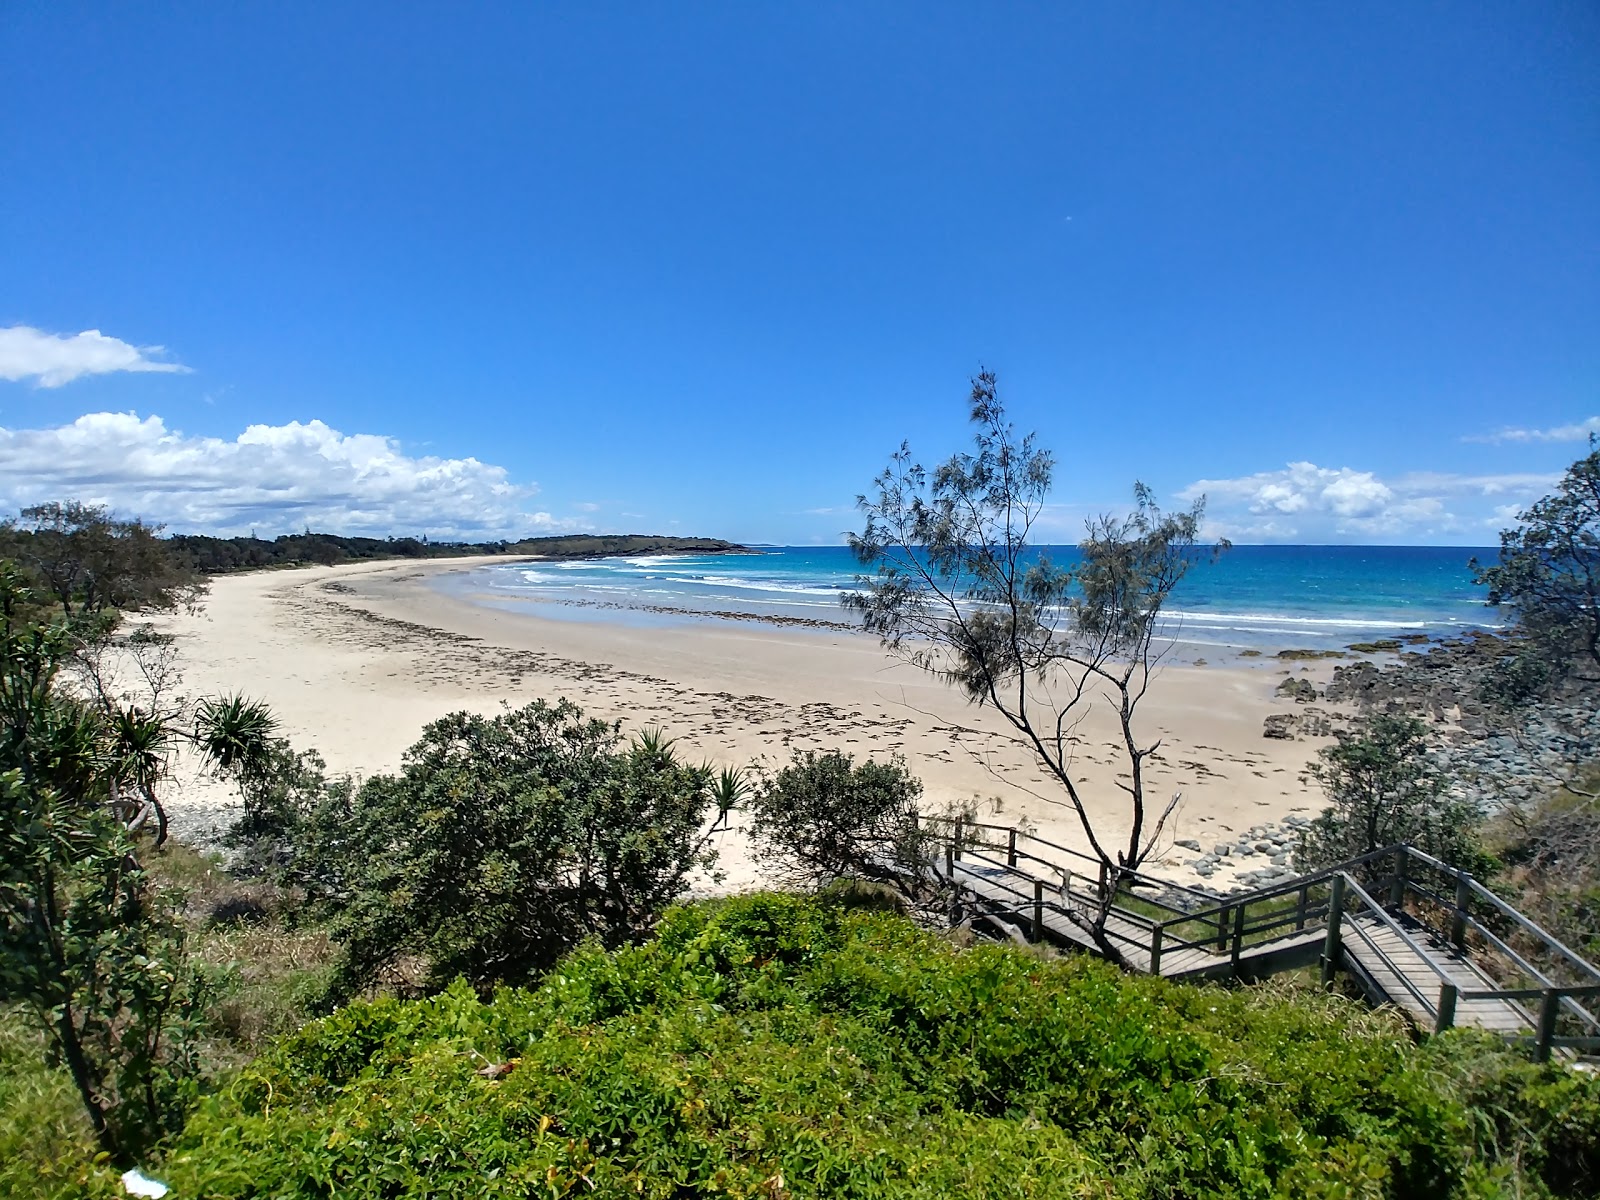 Foto av Ocean View Beach med lång rak strand